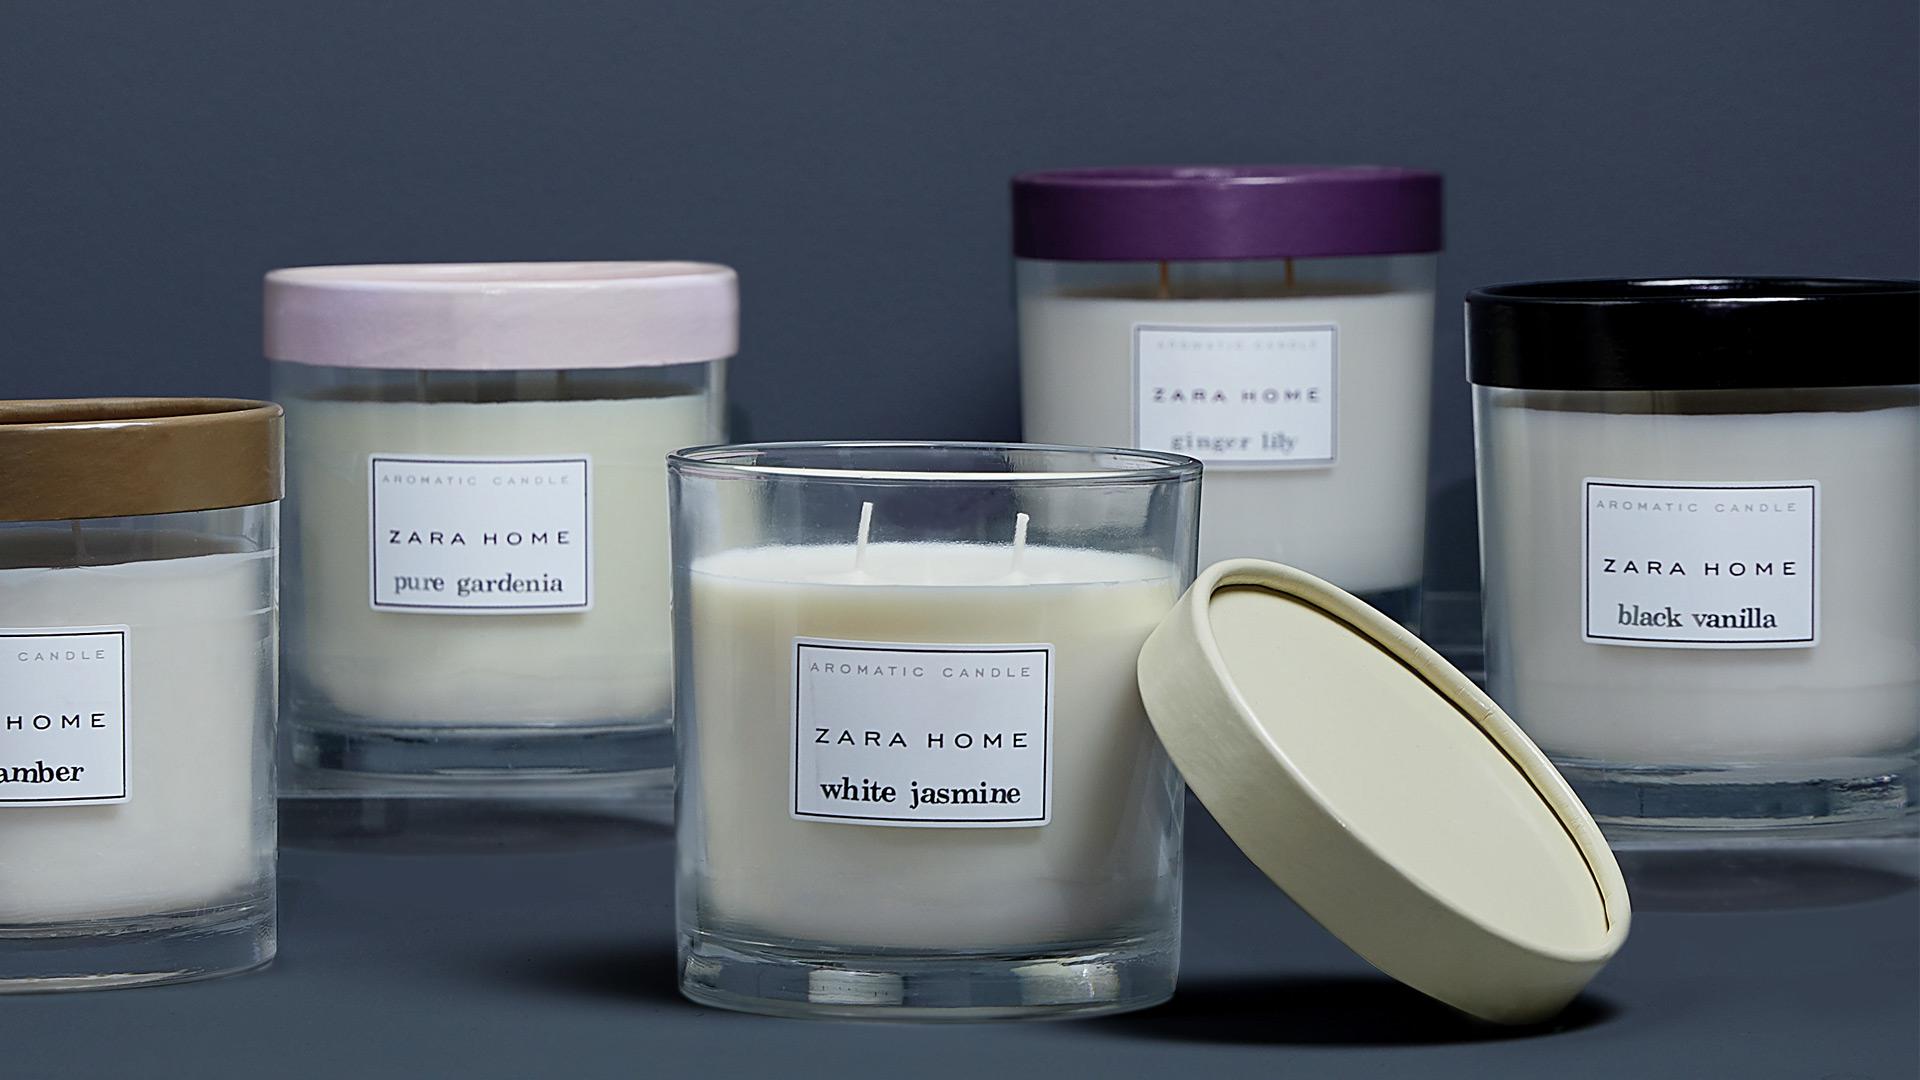 Najbrži način da stvorite željenu atmosferu u domu jest paljenje mirisne svijeće s omiljenim mirisom. Zara Home, 49 kuna